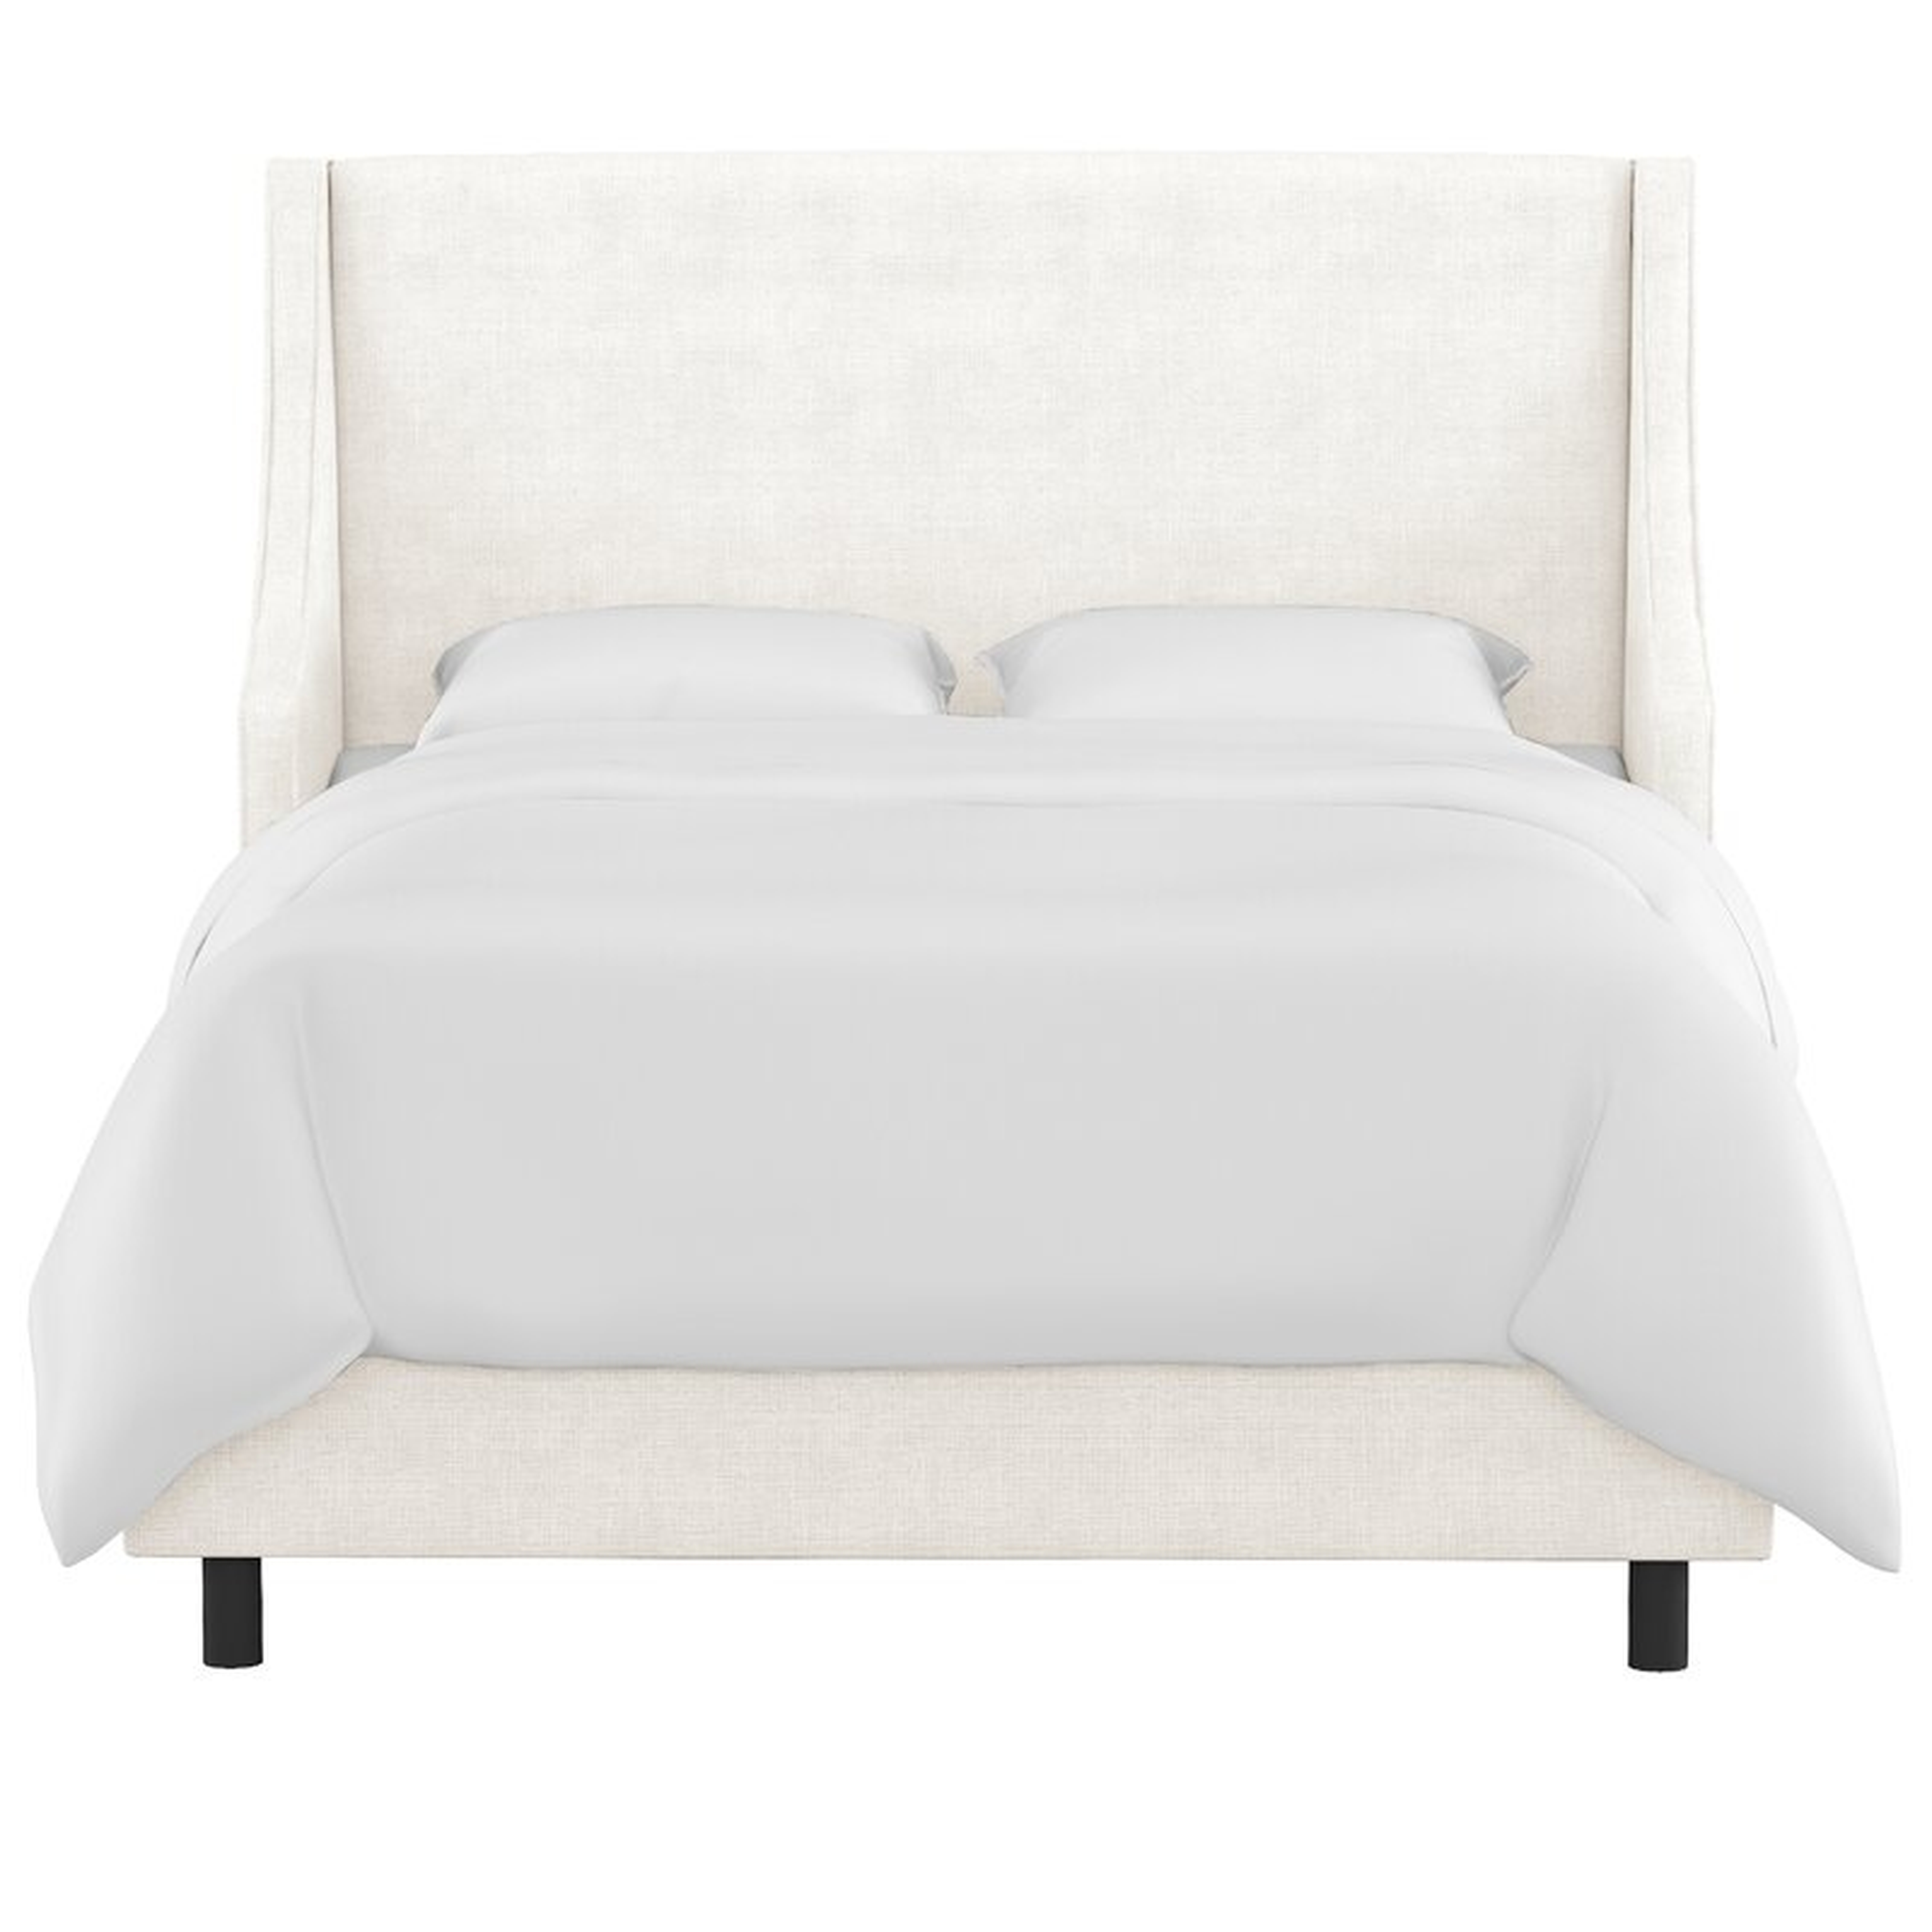 Maser Upholstered Low Profile Standard Bed - Wayfair